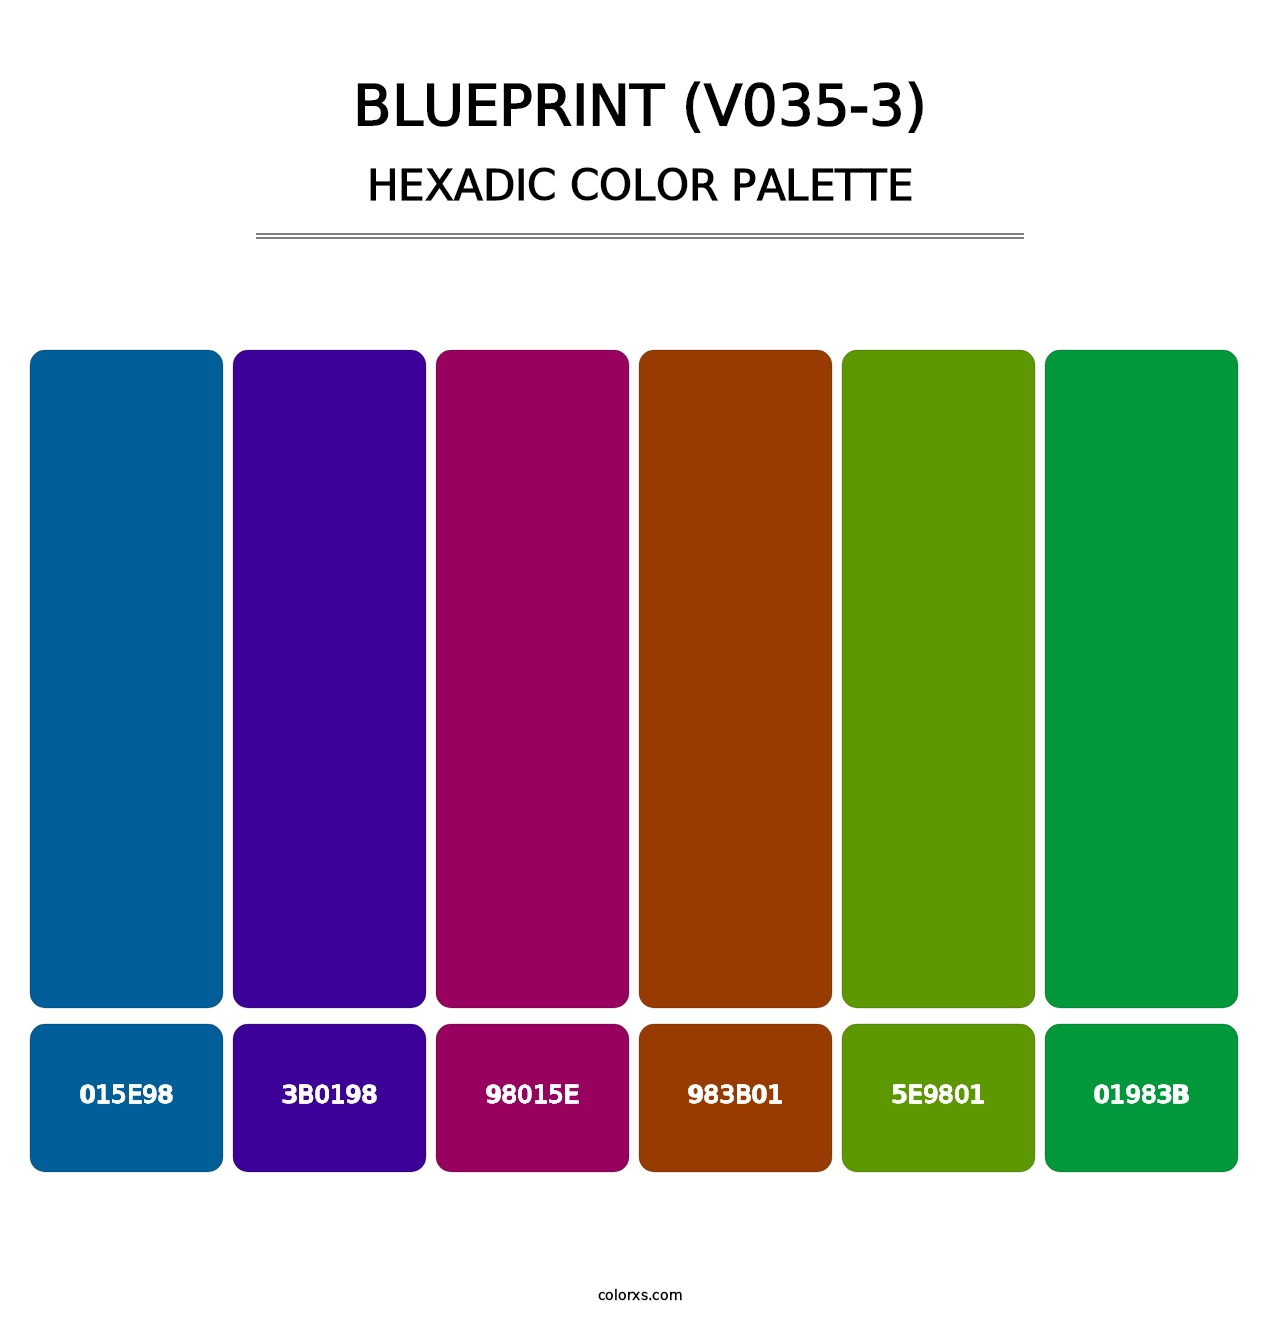 Blueprint (V035-3) - Hexadic Color Palette